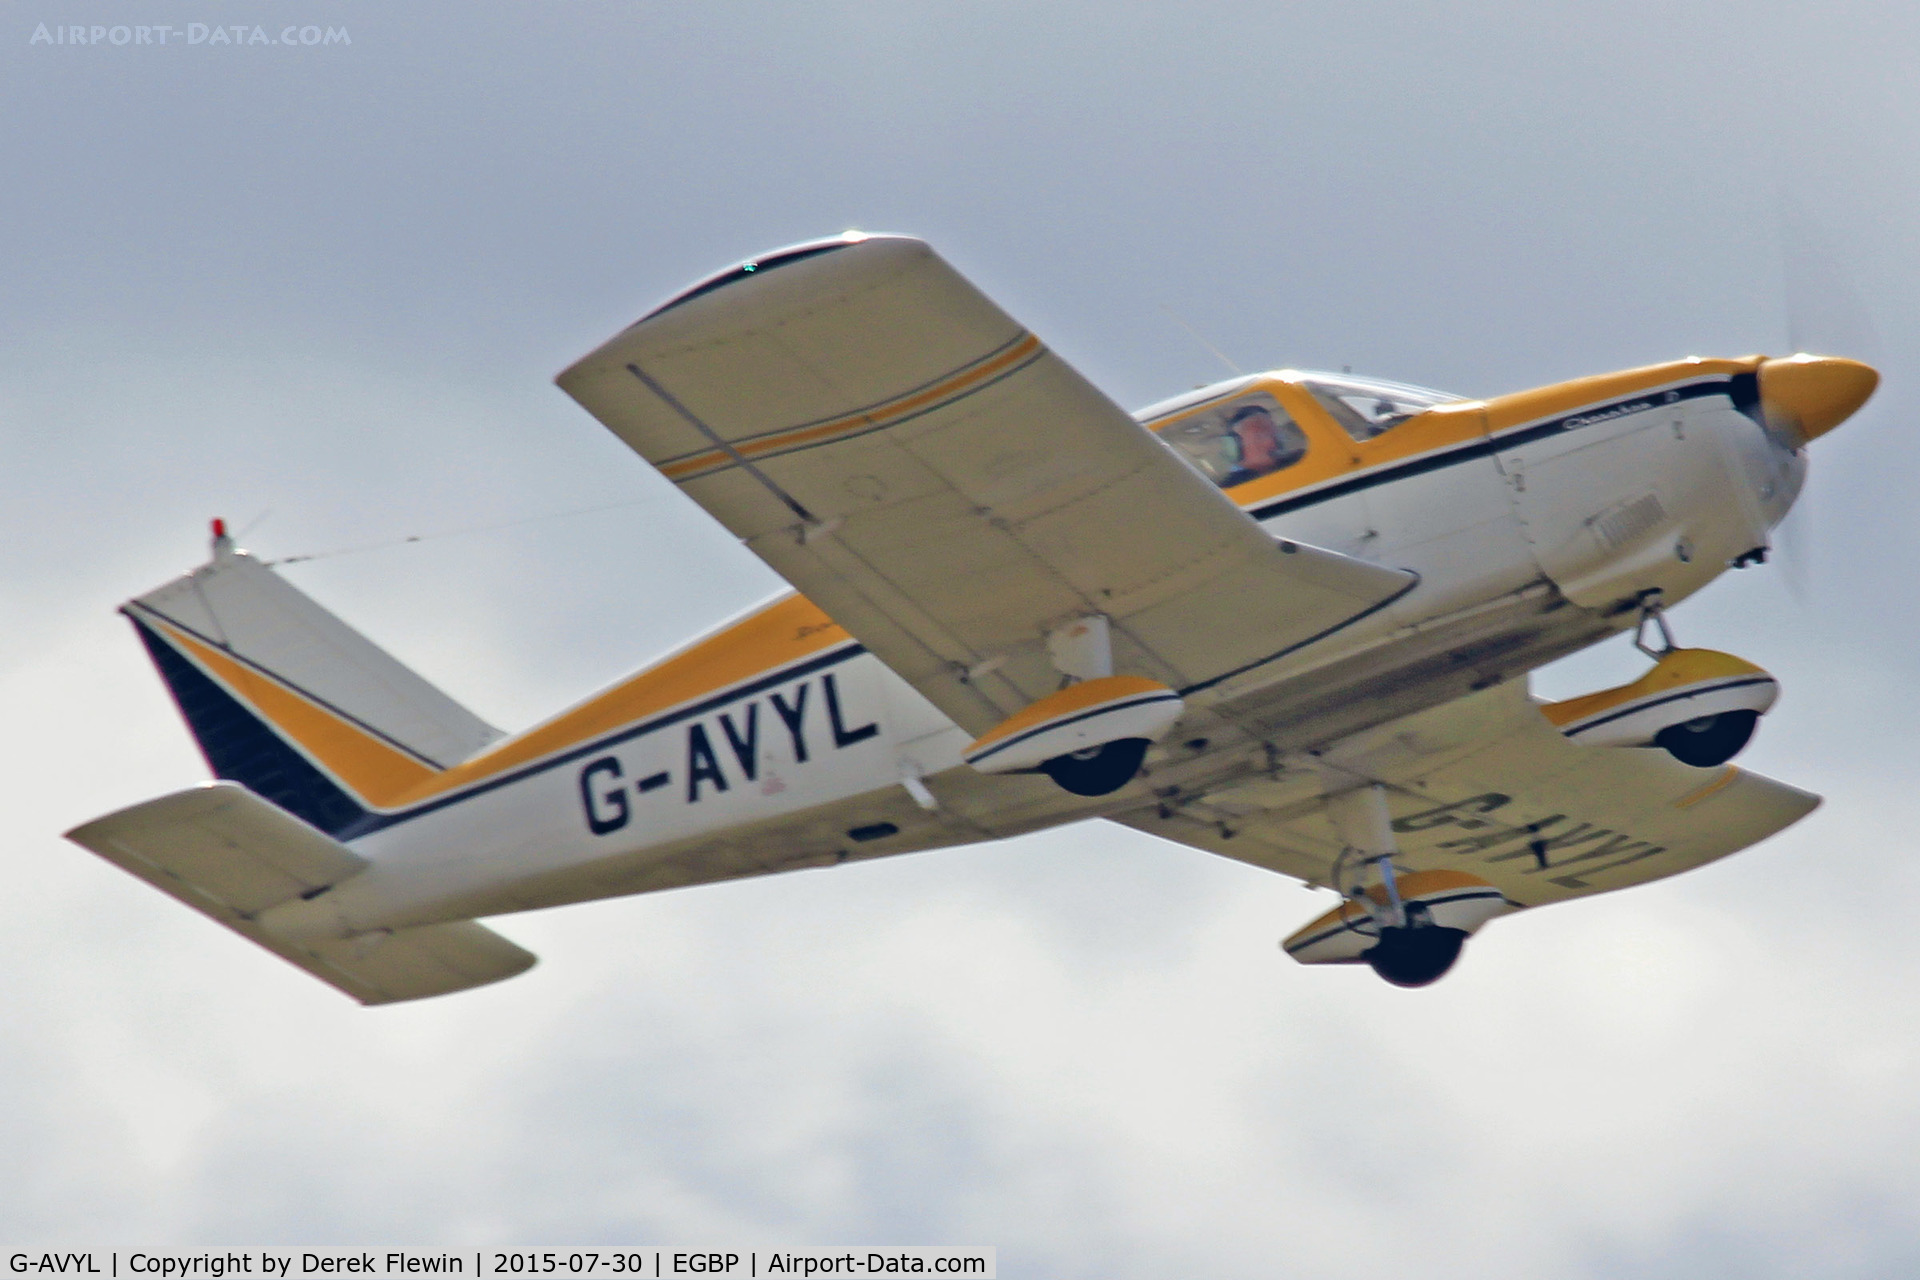 G-AVYL, 1968 Piper PA-28-180 Cherokee D C/N 28-4622, Cherokee, Kemble based, previously N11C, seen departing runway 26.